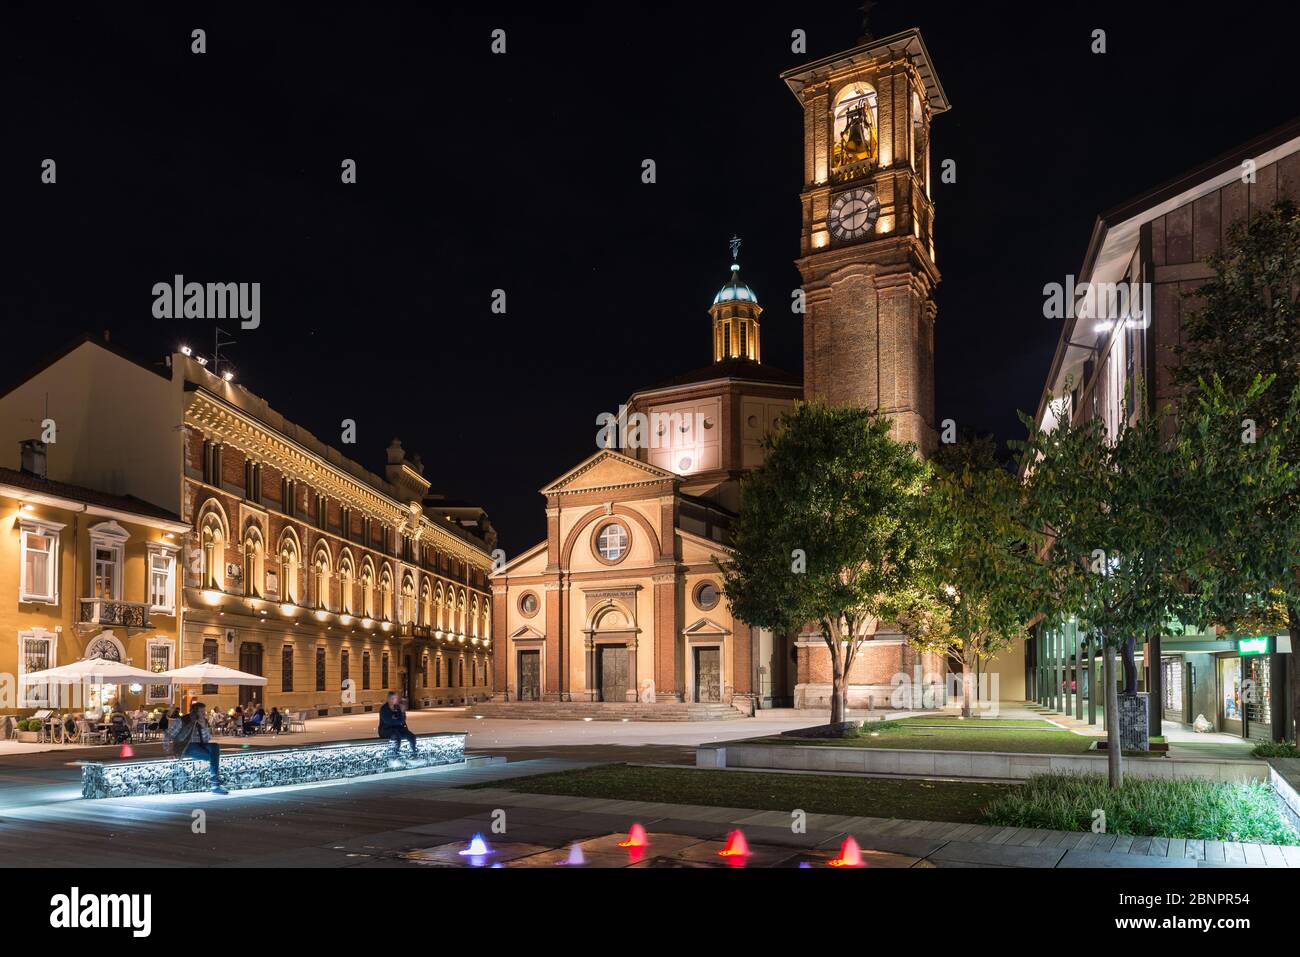 Historic center of Legnano at night, Italy Stock Photo